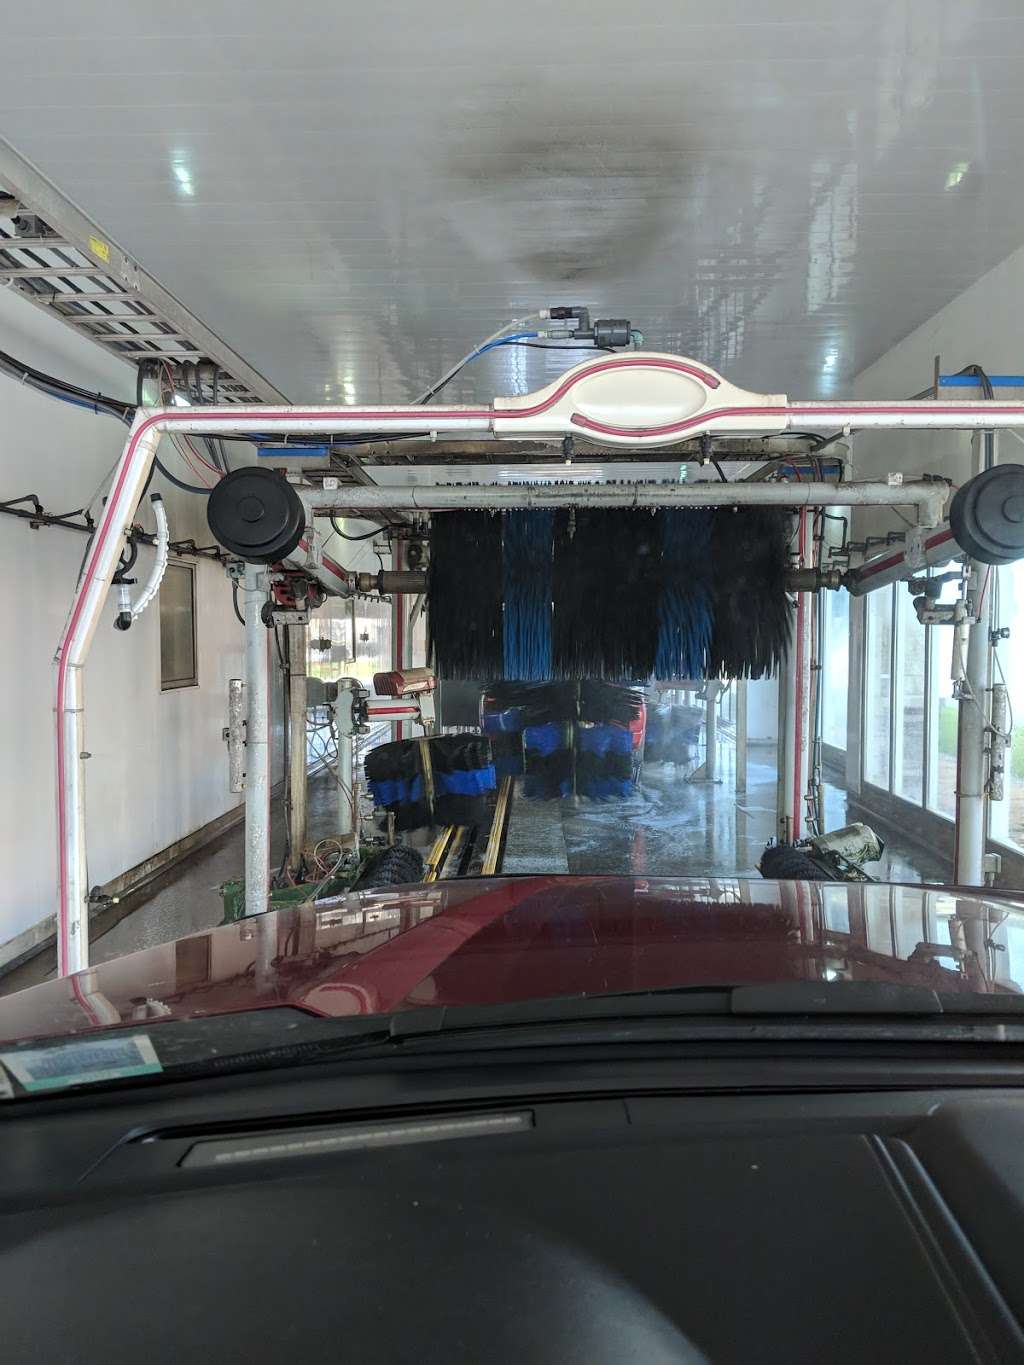 Express Wash Car Wash & Detailing | 214 Country Club Rd, Front Royal, VA 22630 | Phone: (540) 636-9274